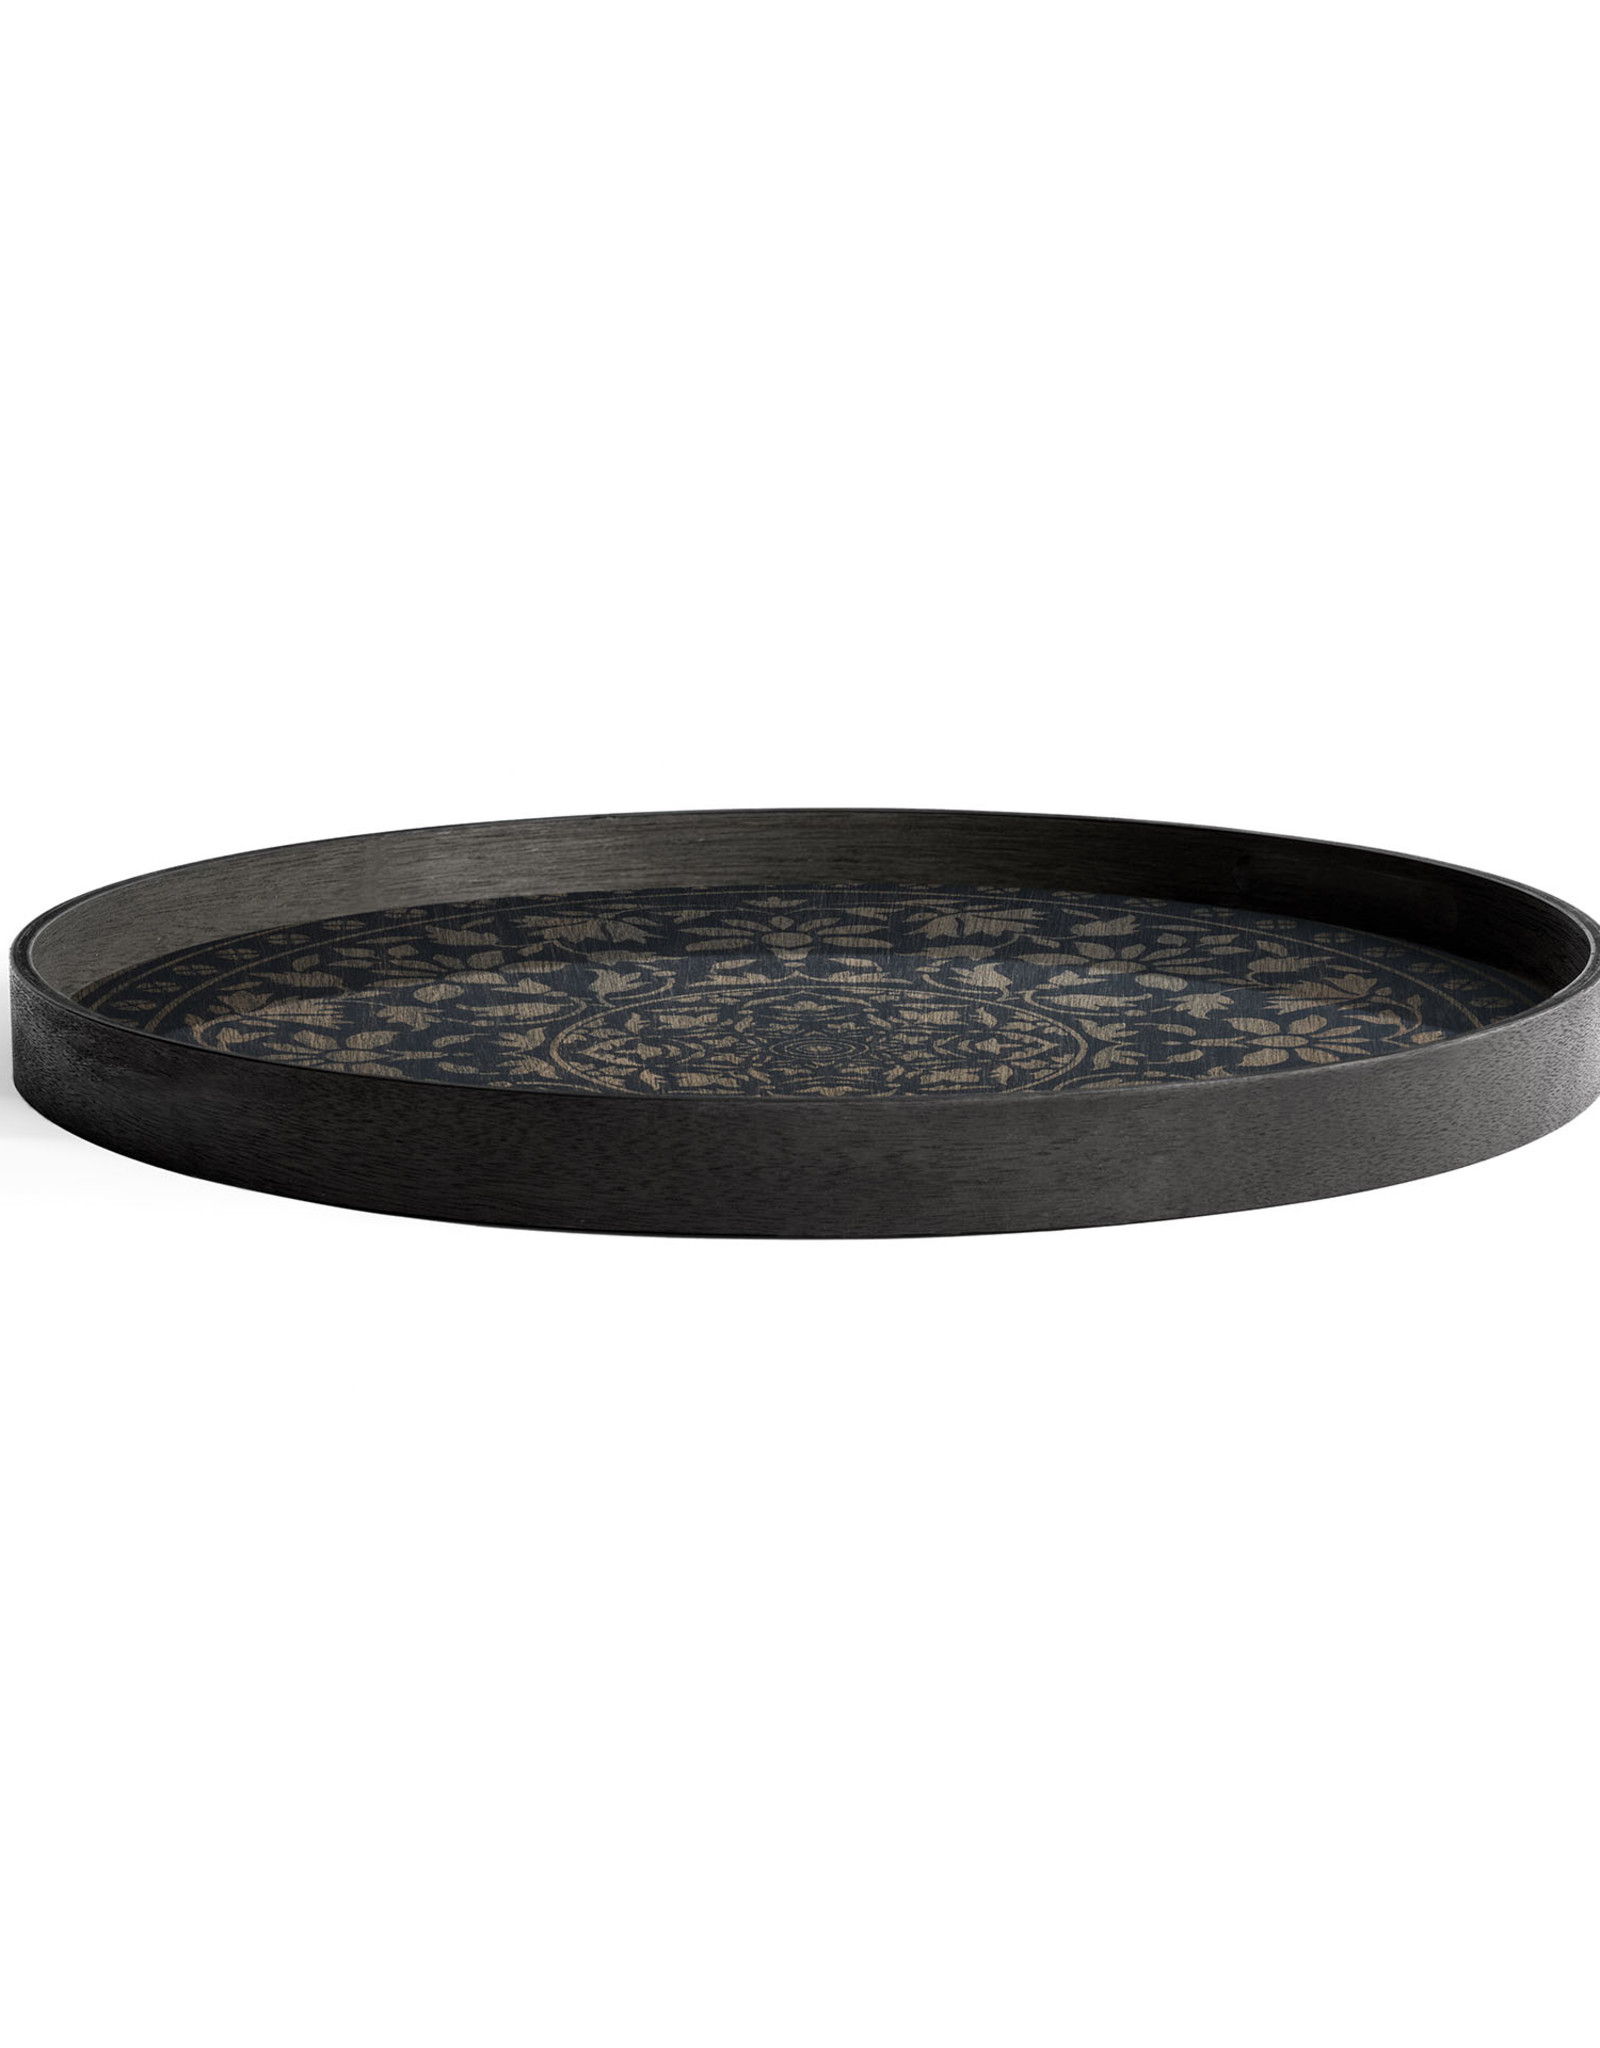 Black Marrakesh wooden tray - round - L